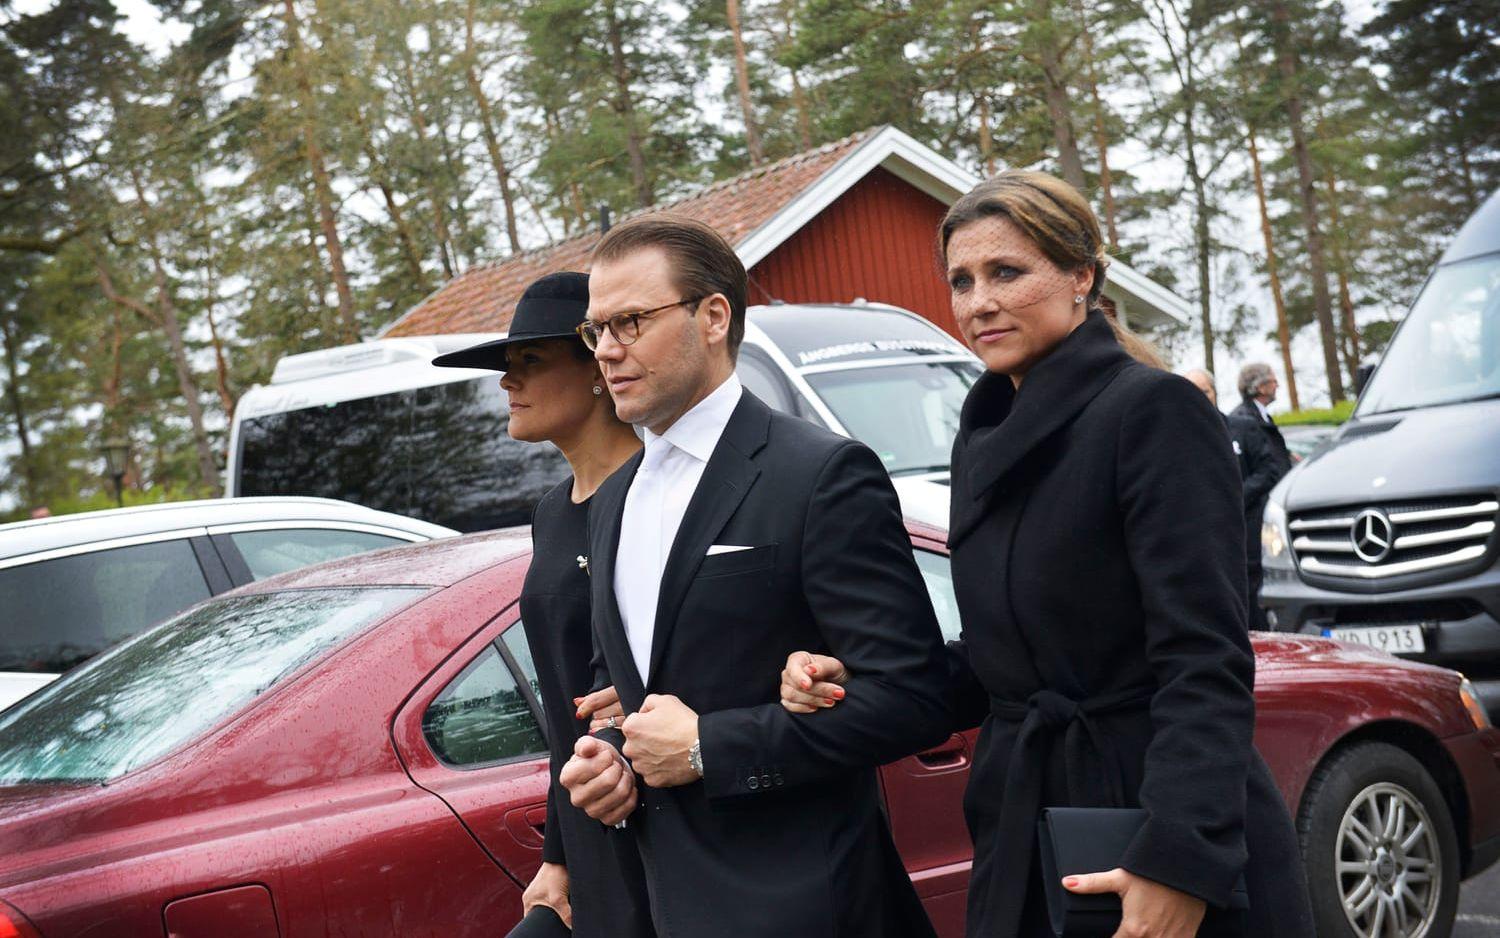 Prinsessan Victoria och prins Daniel kom tillsammans med prinsessan Märtha Louise av Norge.Foto: Anna-Maria Holmgren